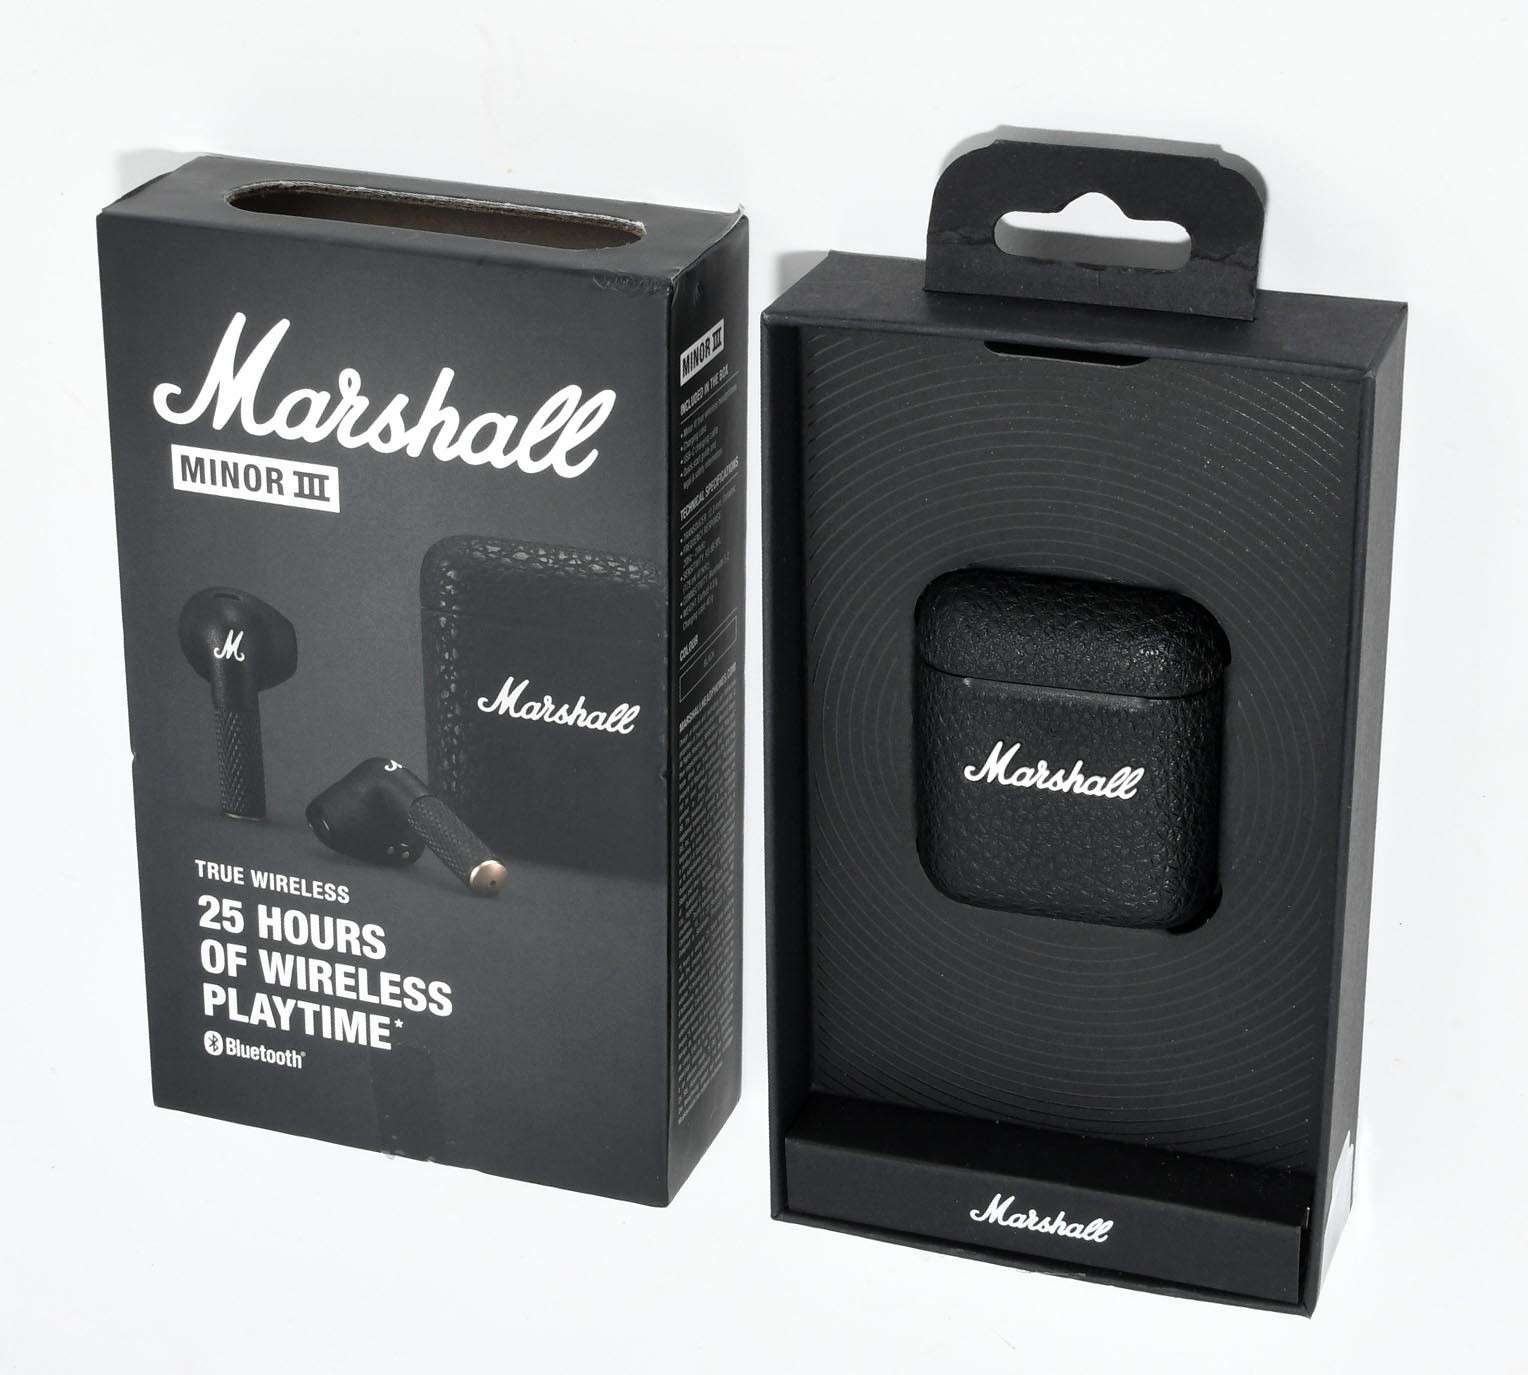  Marshall Minor II Auriculares intrauditivos Bluetooth, color  negro - NUEVO : Electrónica